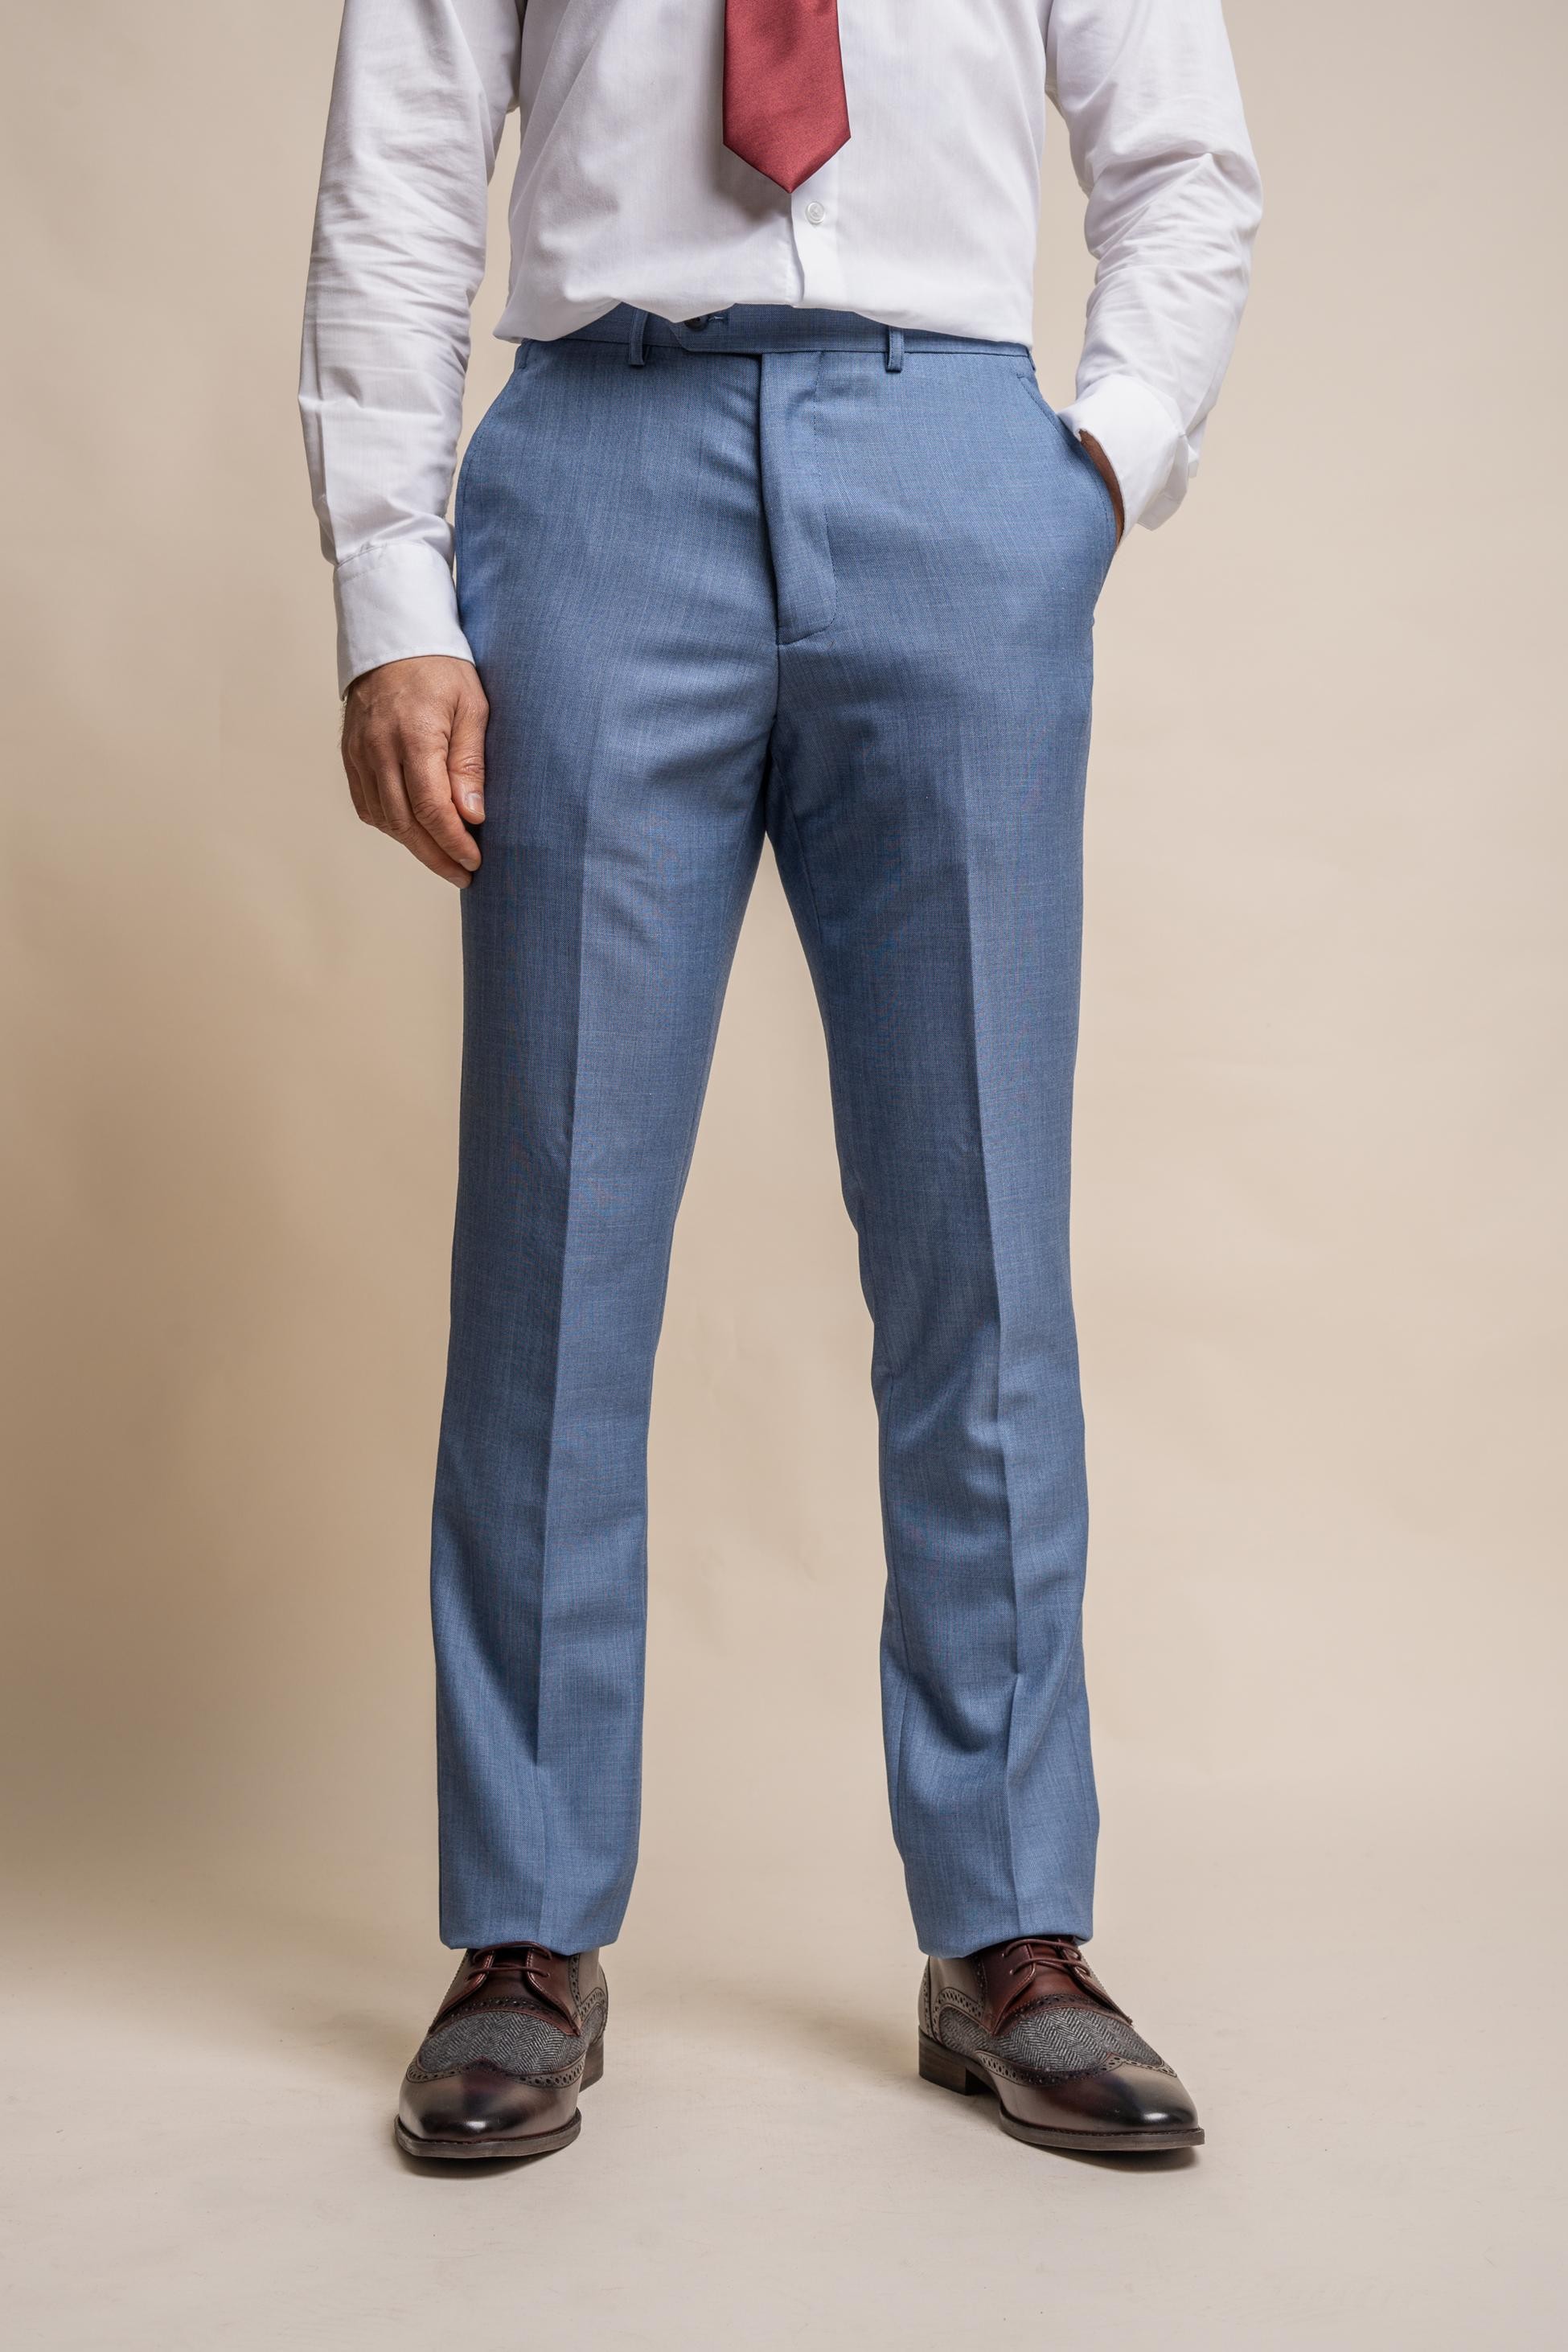 Men's Slim Fit Formal Pants - REEGAN